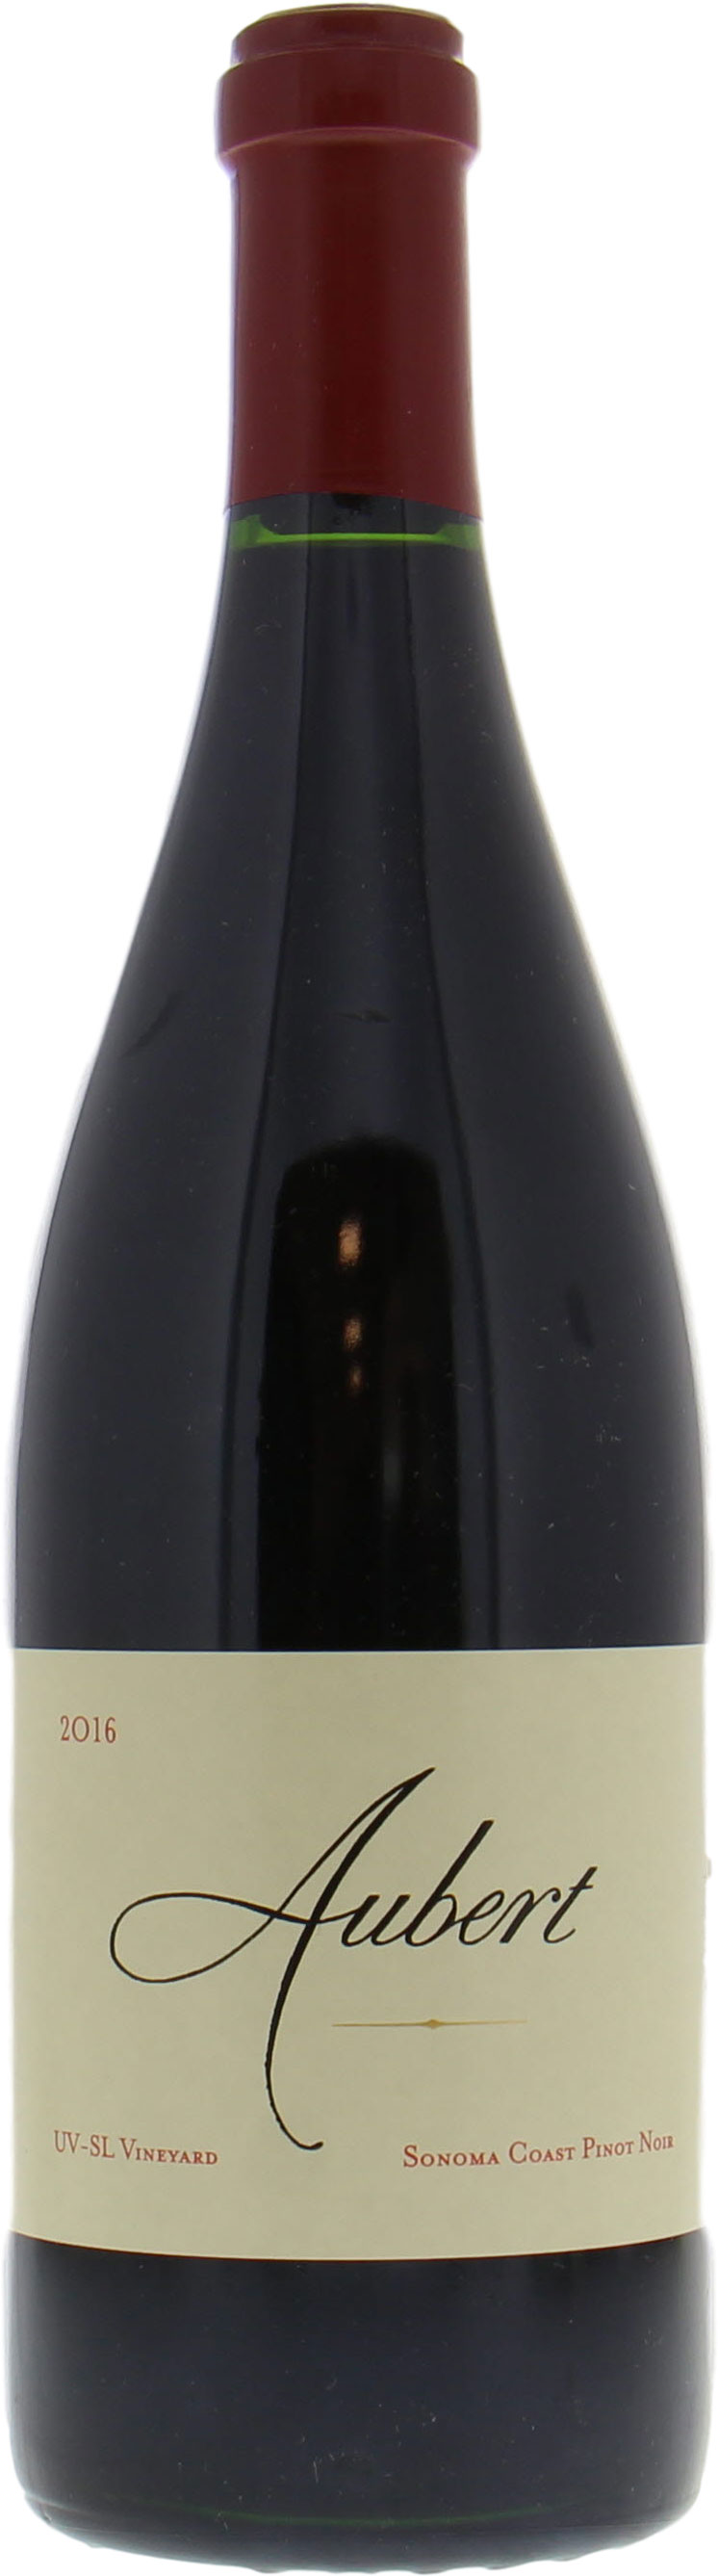 Aubert - UV-SL Pinot Noir 2016 Perfect